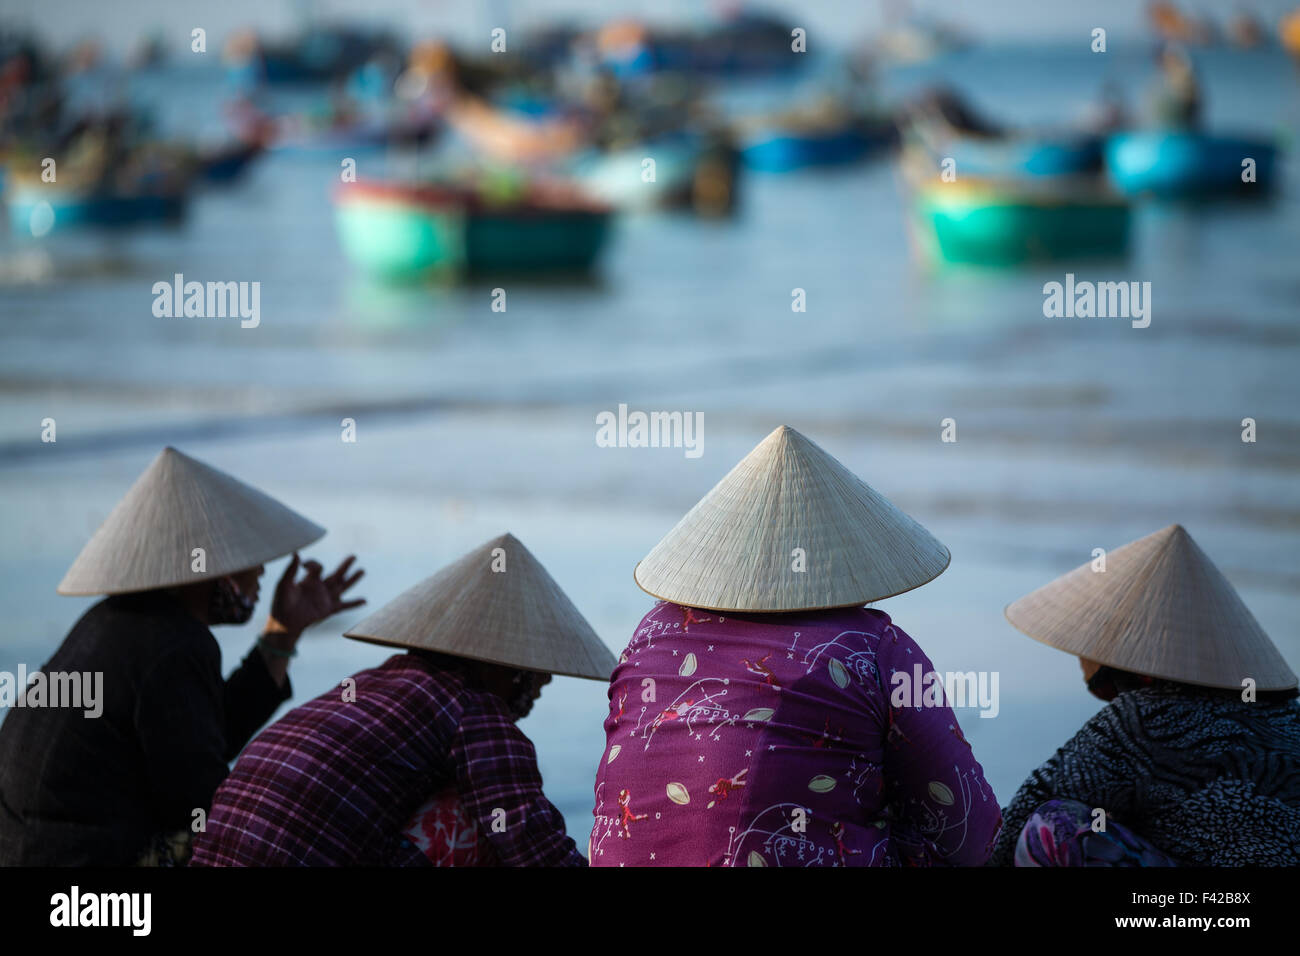 Né Mũi aldea pesquera, Provincia Thuận Bình, Vietnam Foto de stock